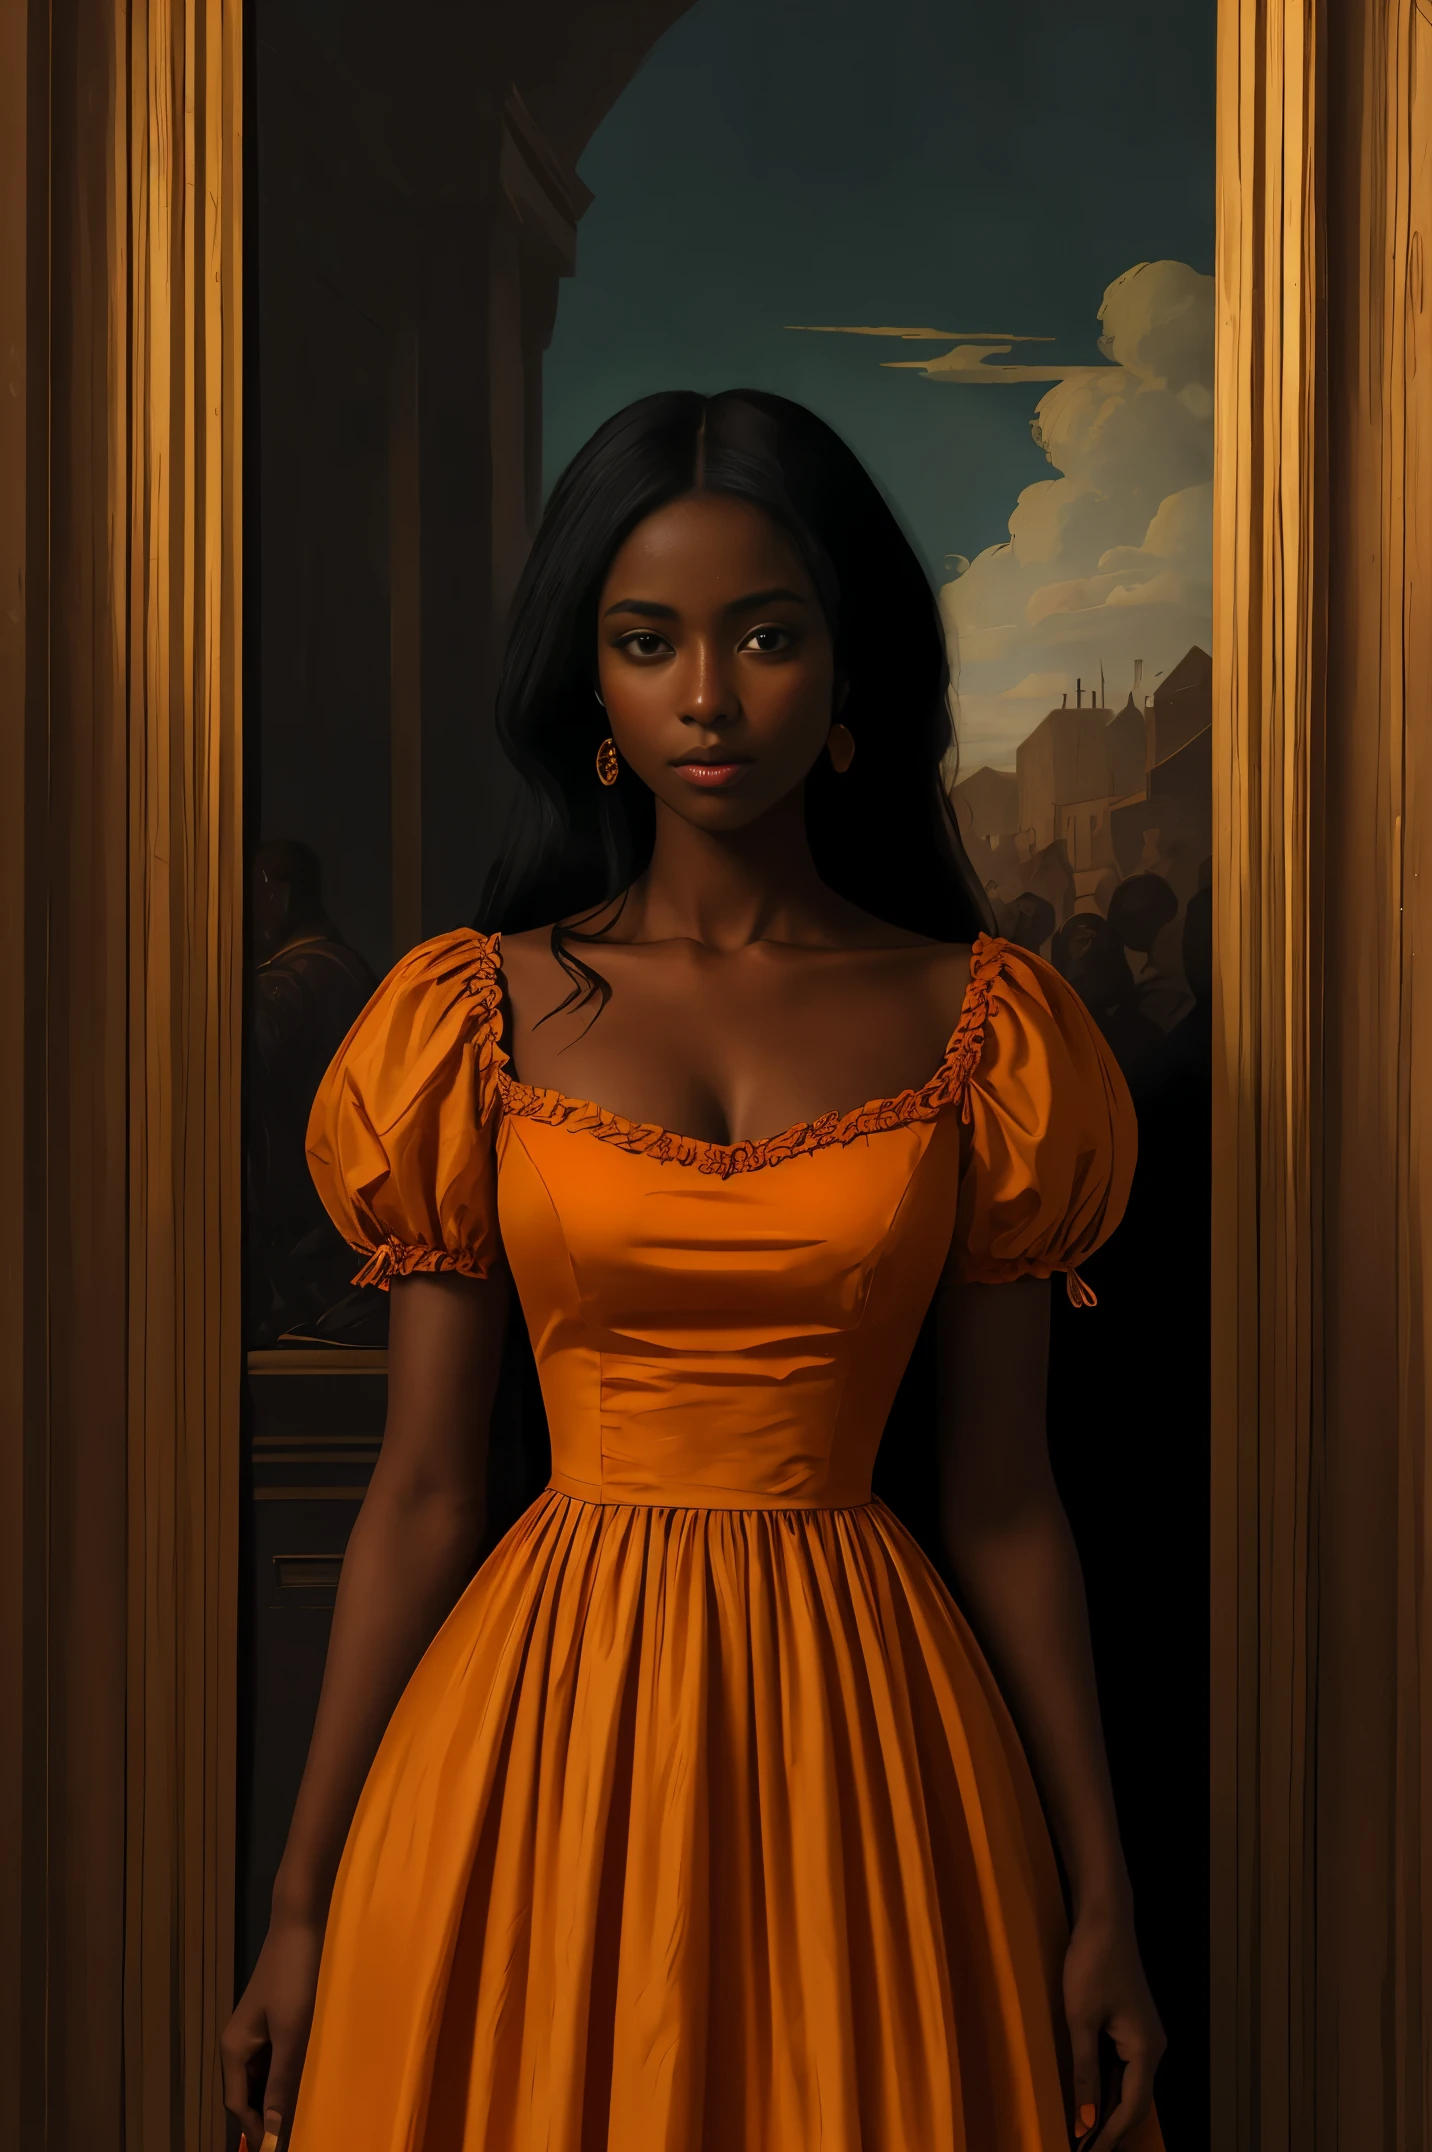 オレンジ色のドレスを着た黒い肌の美しい女性, ルネッサンス様式, ヴァシリー・ヴェレシチャーギンに触発された